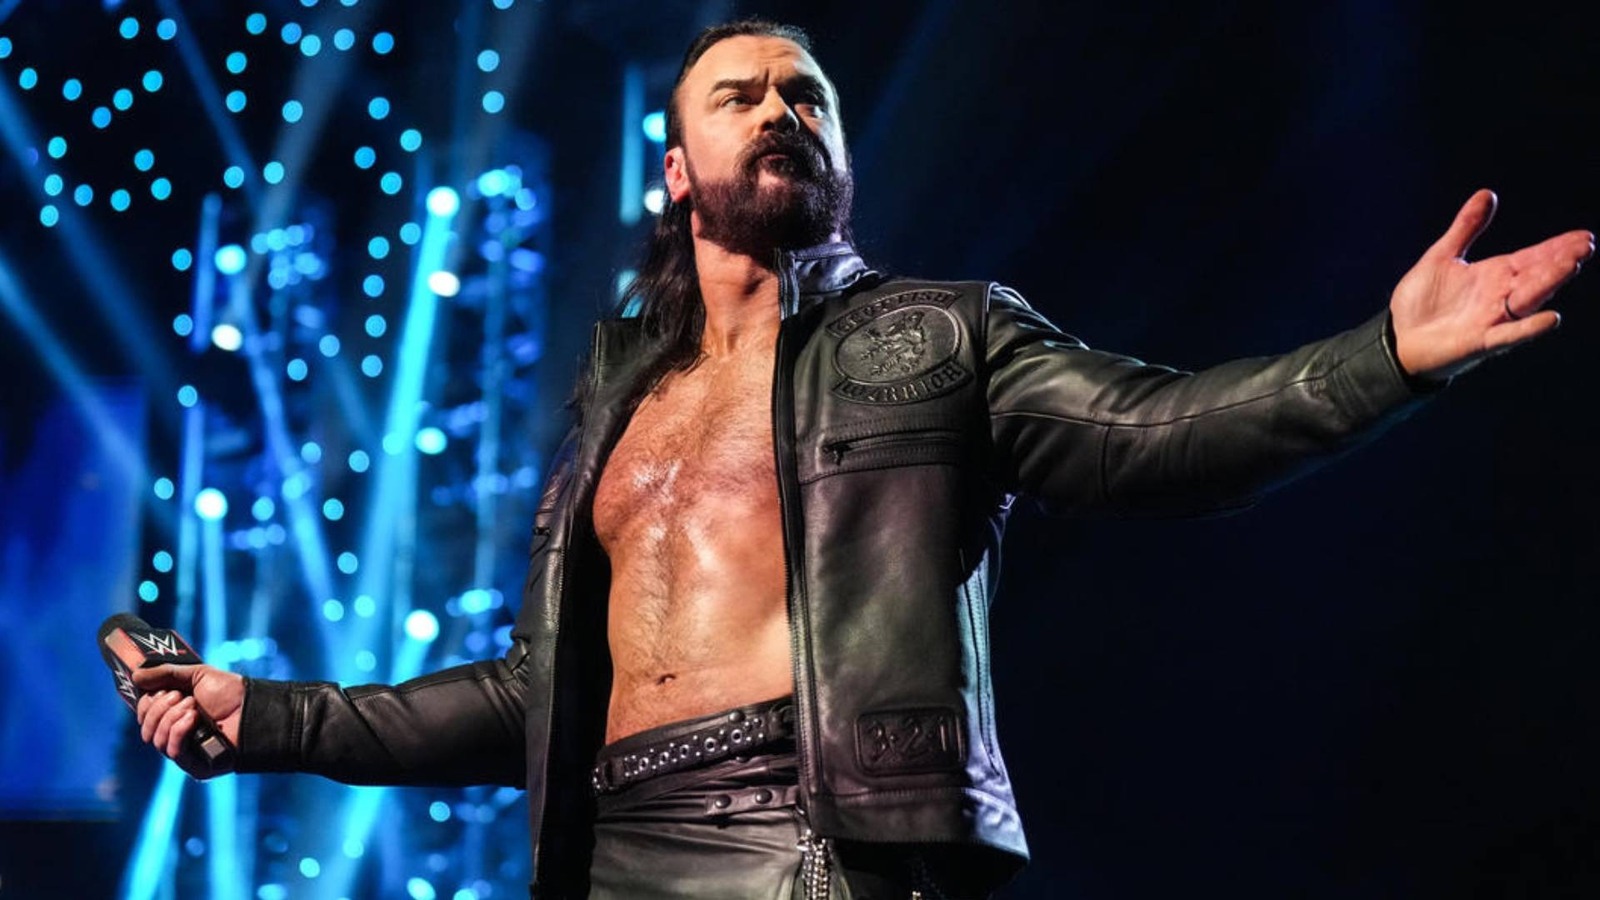 Según los informes, Drew McIntyre salió del ring después del evento principal de WWE Survivor Series